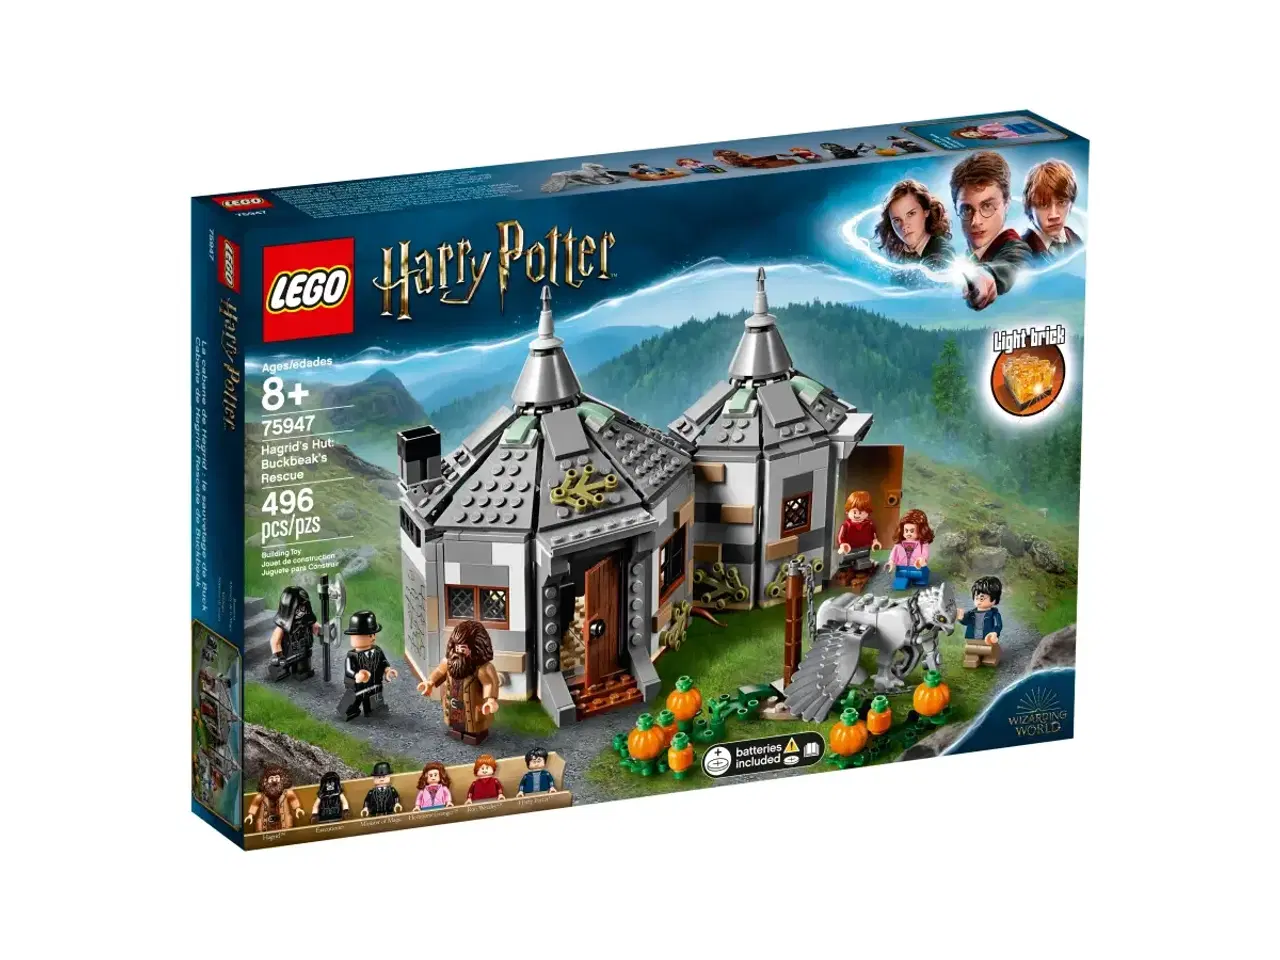 Billede 2 - Hagrid's Hut, sæt nr. 75947